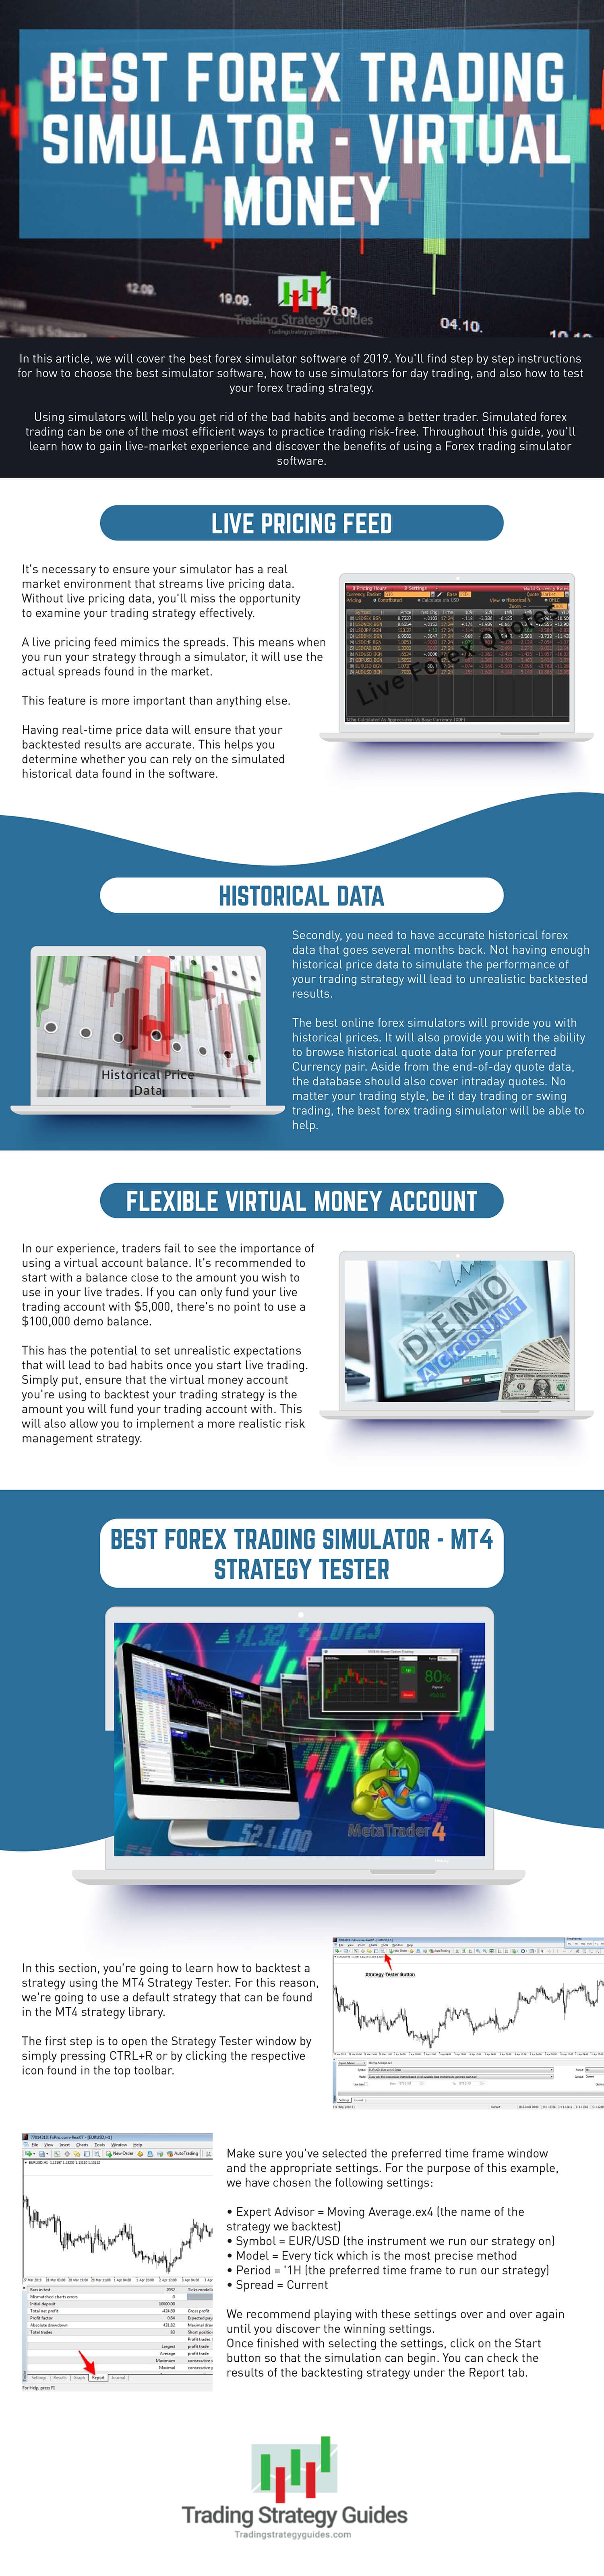 Virtual forex trading game